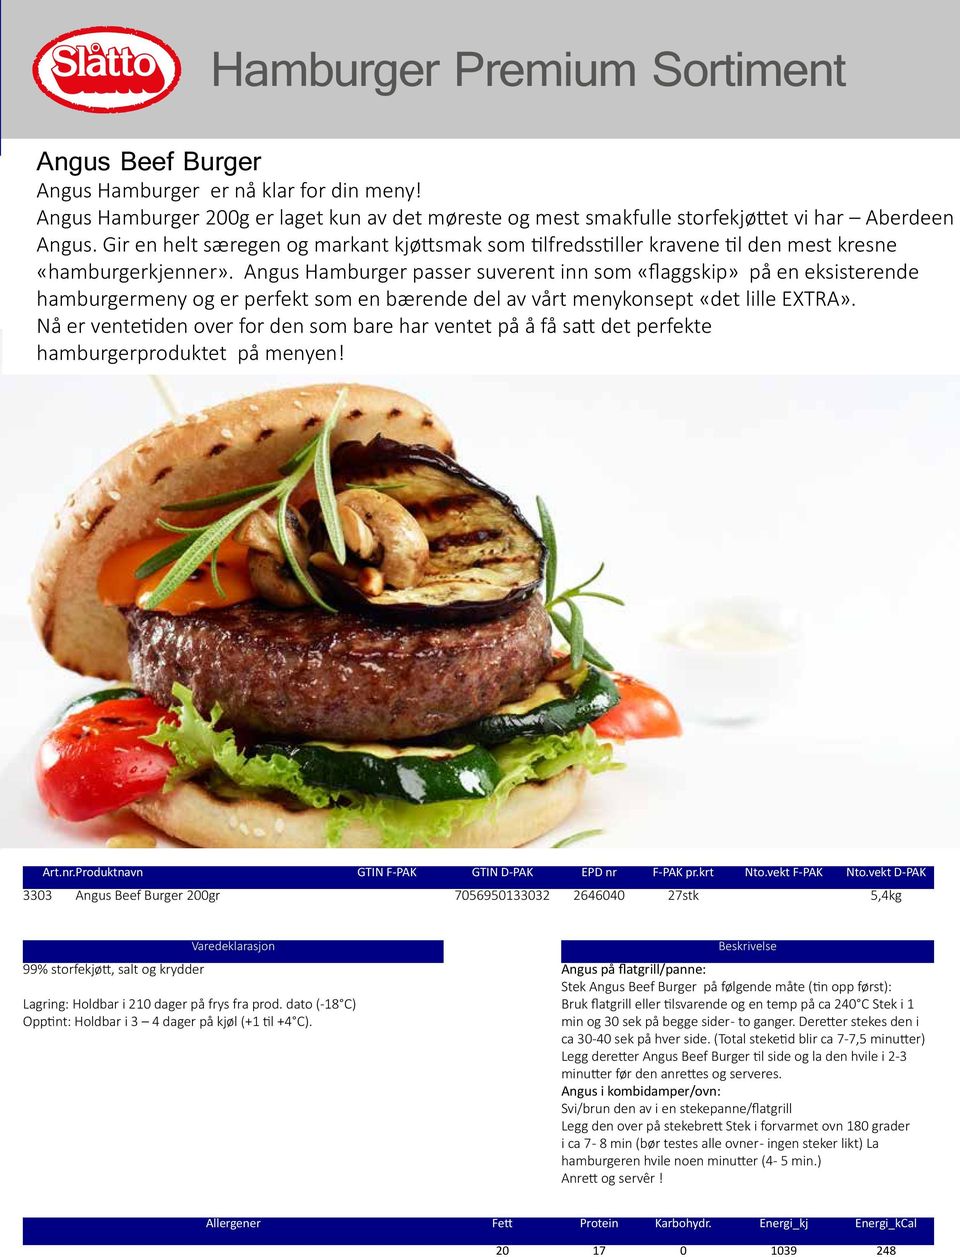 Angus Hamburger passer suverent inn som «flaggskip» på en eksisterende hamburgermeny og er perfekt som en bærende del av vårt menykonsept «det lille EXTRA».